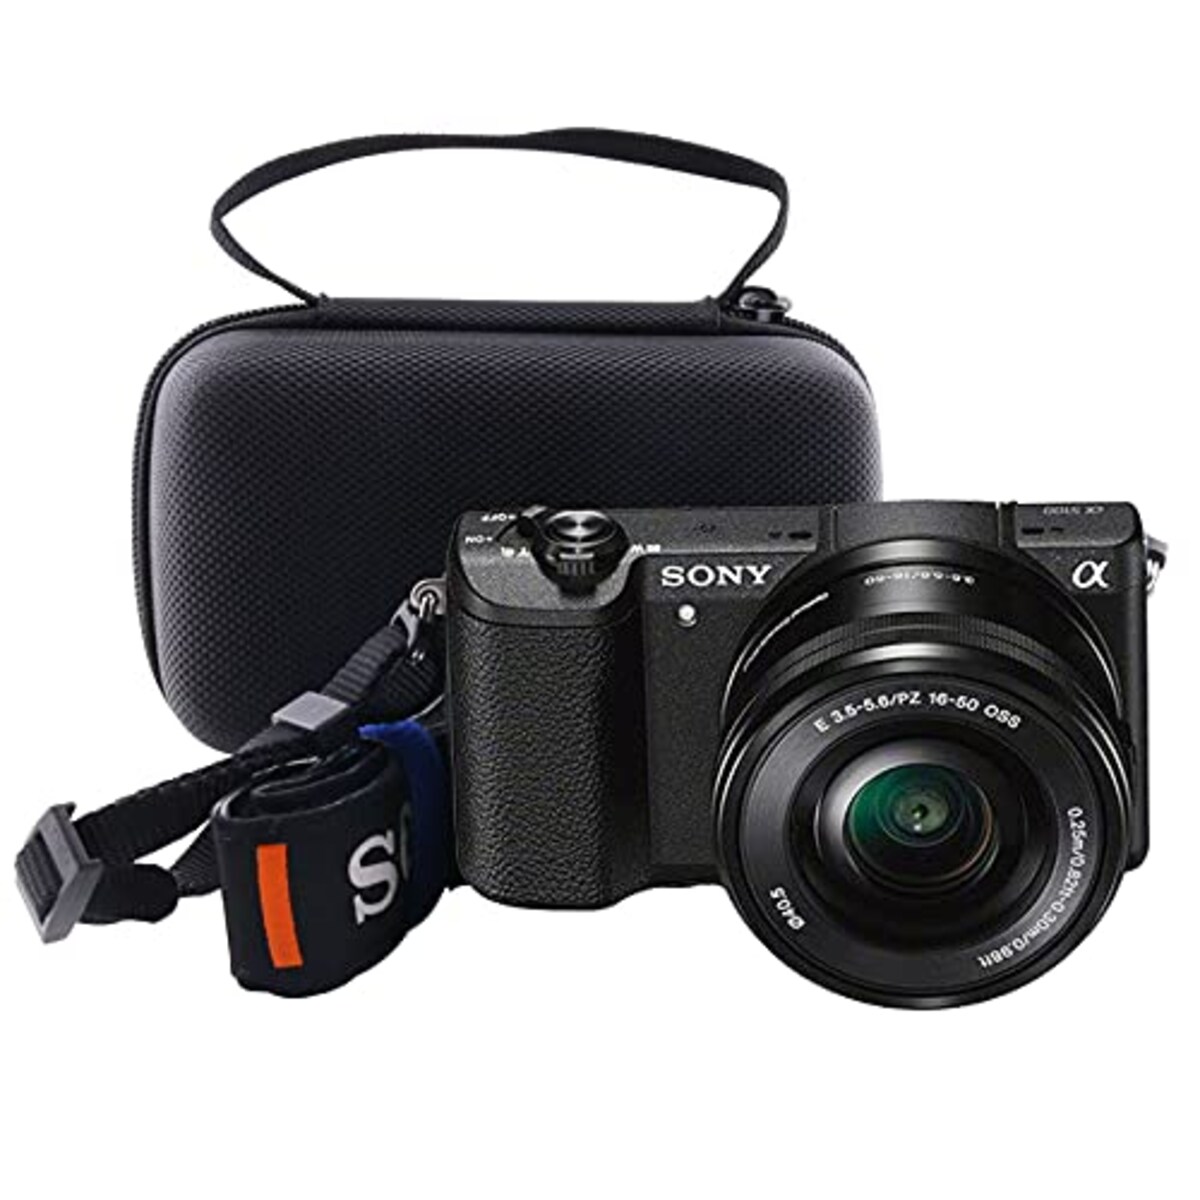  WERJIA 収納ケースソニー(SONY) VLOGCAM ZV-E10L/ZV-E10カメラ専用収納ケース,ケース対応16-50mmレンズカメラ画像6 